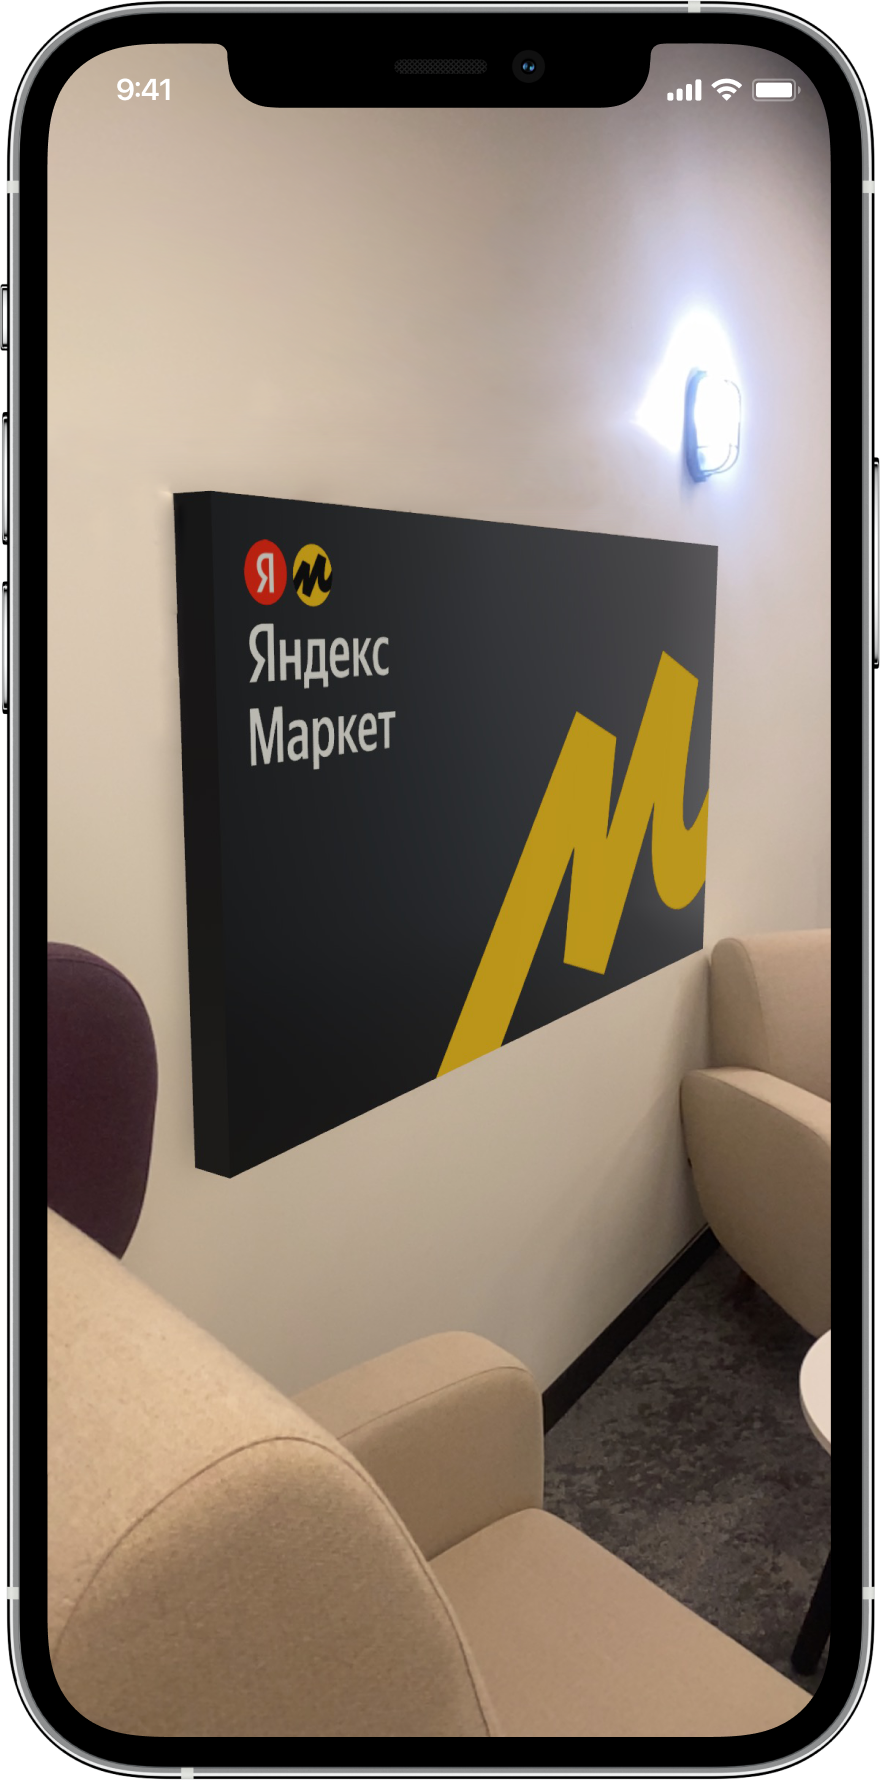 Яндекс.Маркет поможет «примерить» крупную бытовую технику и электронику